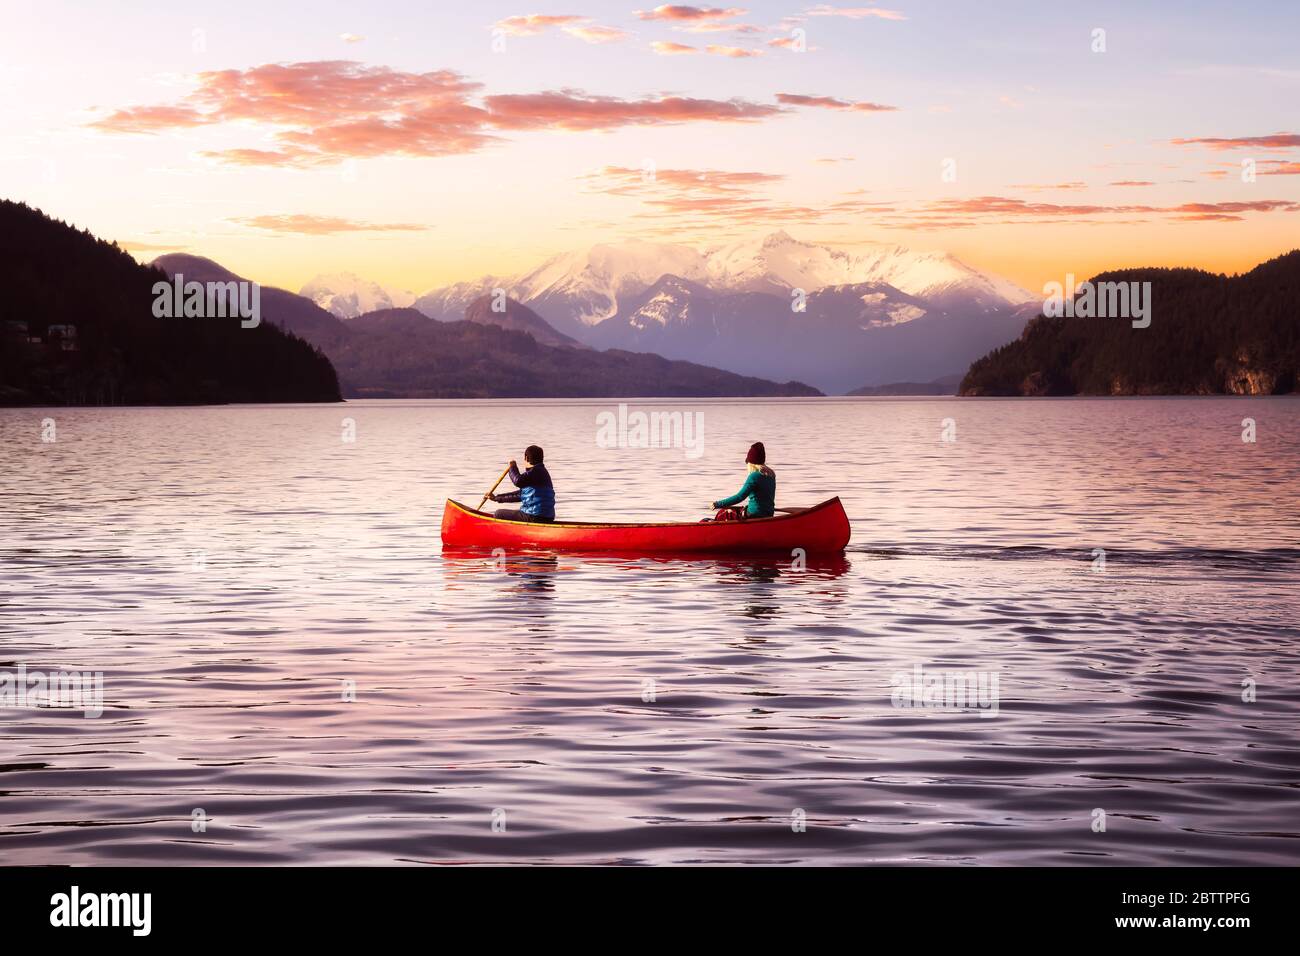 Immagine fantasy composito di persone avventurose su una canoa rossa in legno Foto Stock